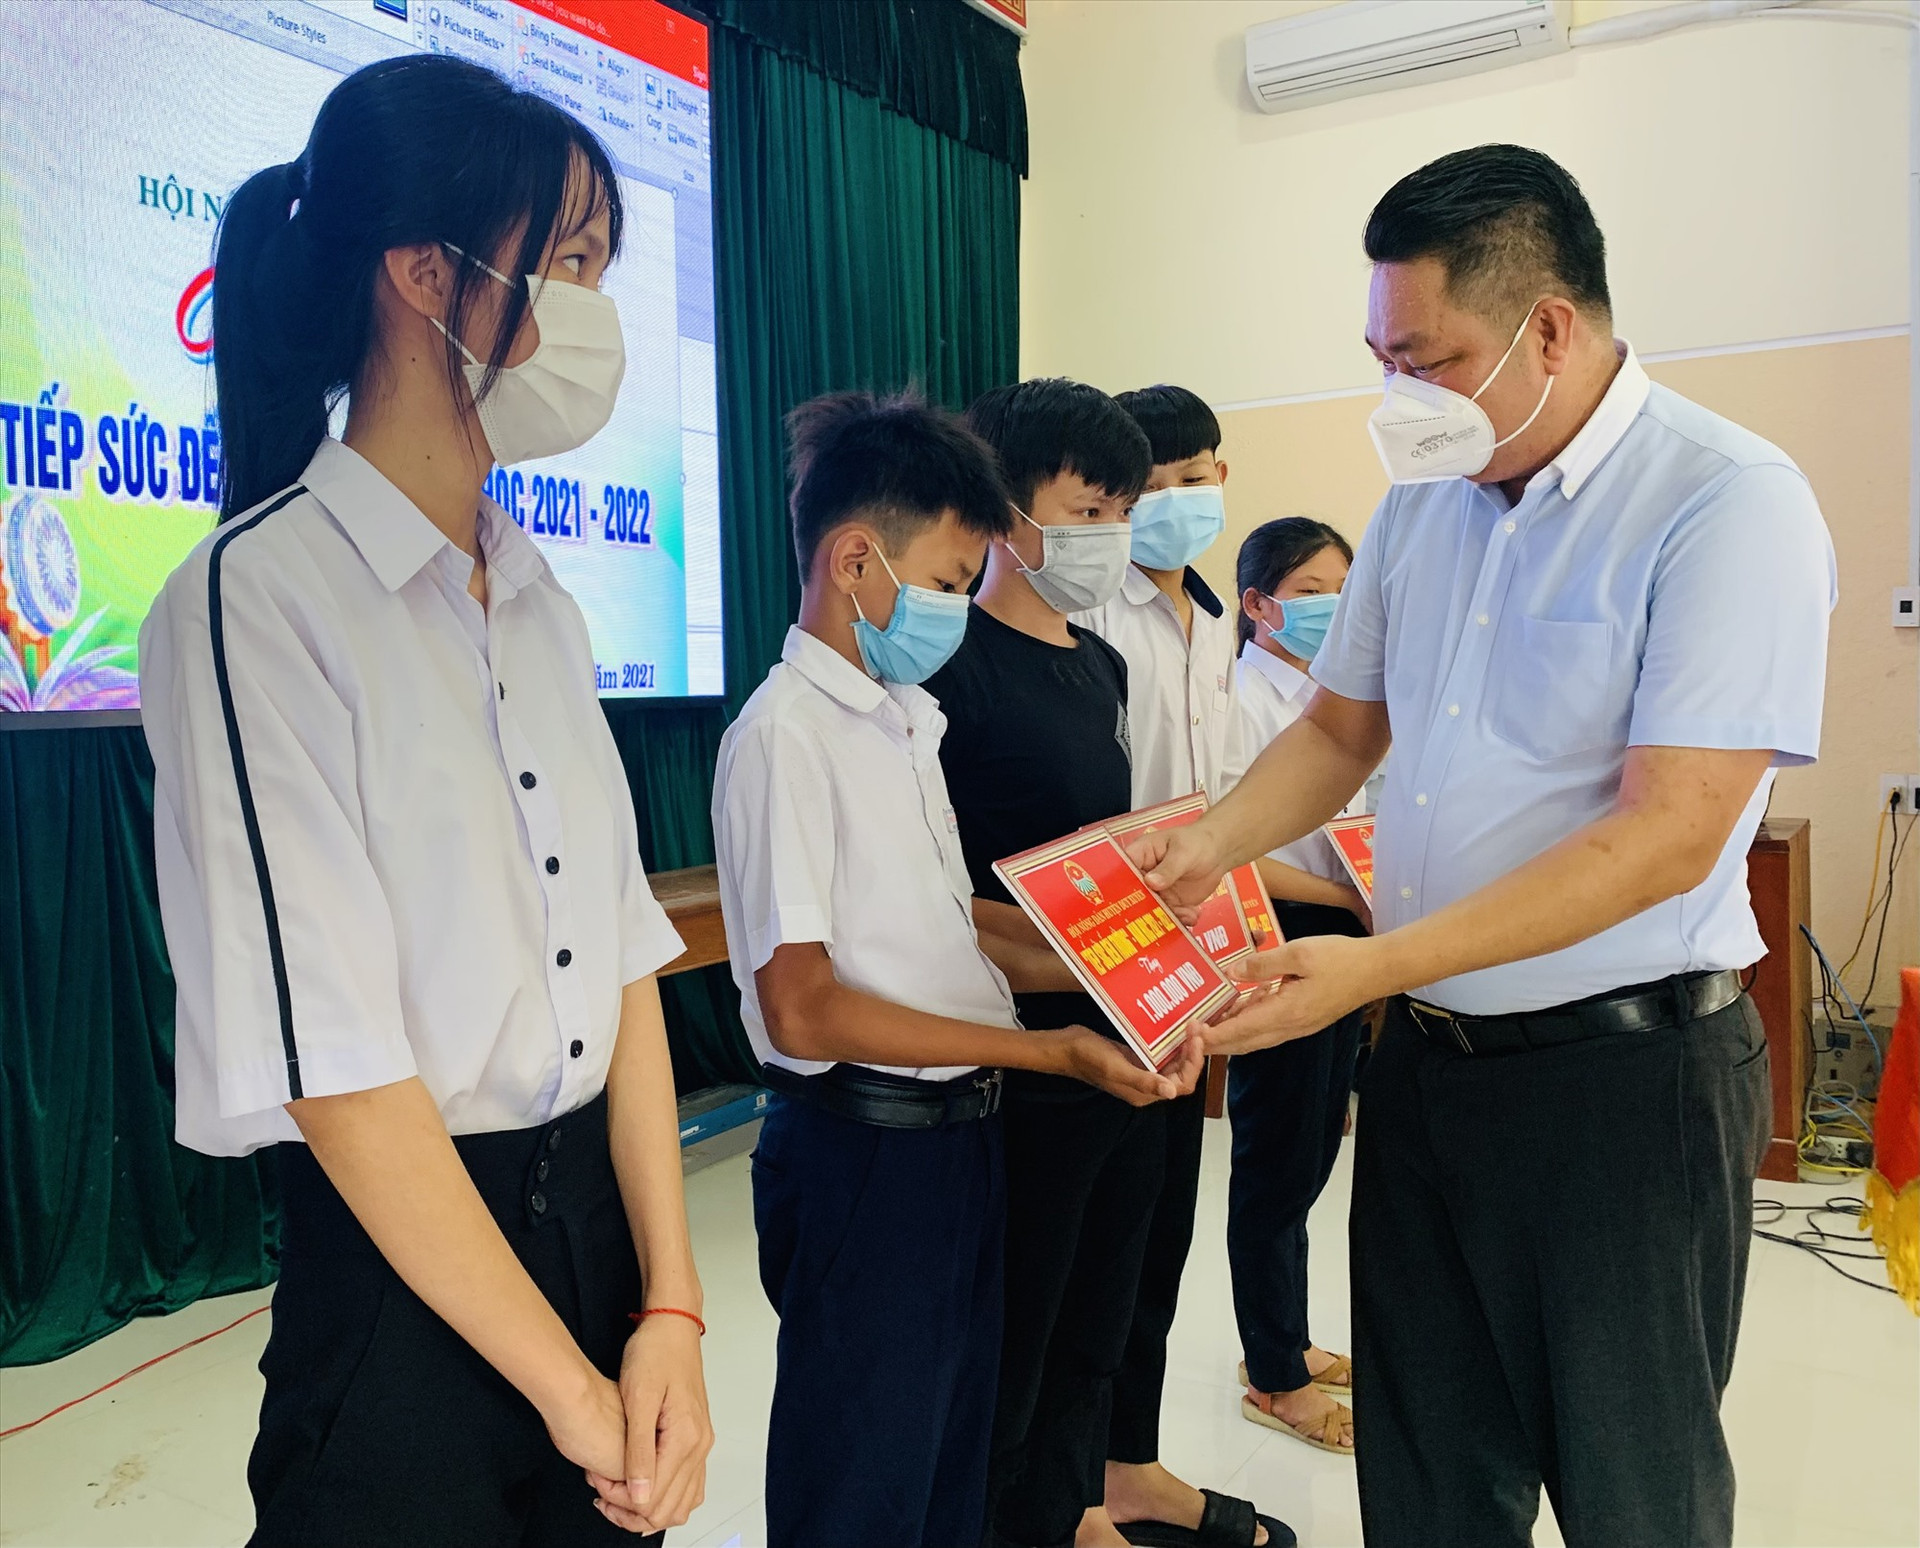 Hội Nông dân huyện Duy Xuyên vừa trao tặng 30 suất học bổng “Tiếp sức đến trường” cho học sinh có hoàn cảnh khó khăn. Ảnh: T.P